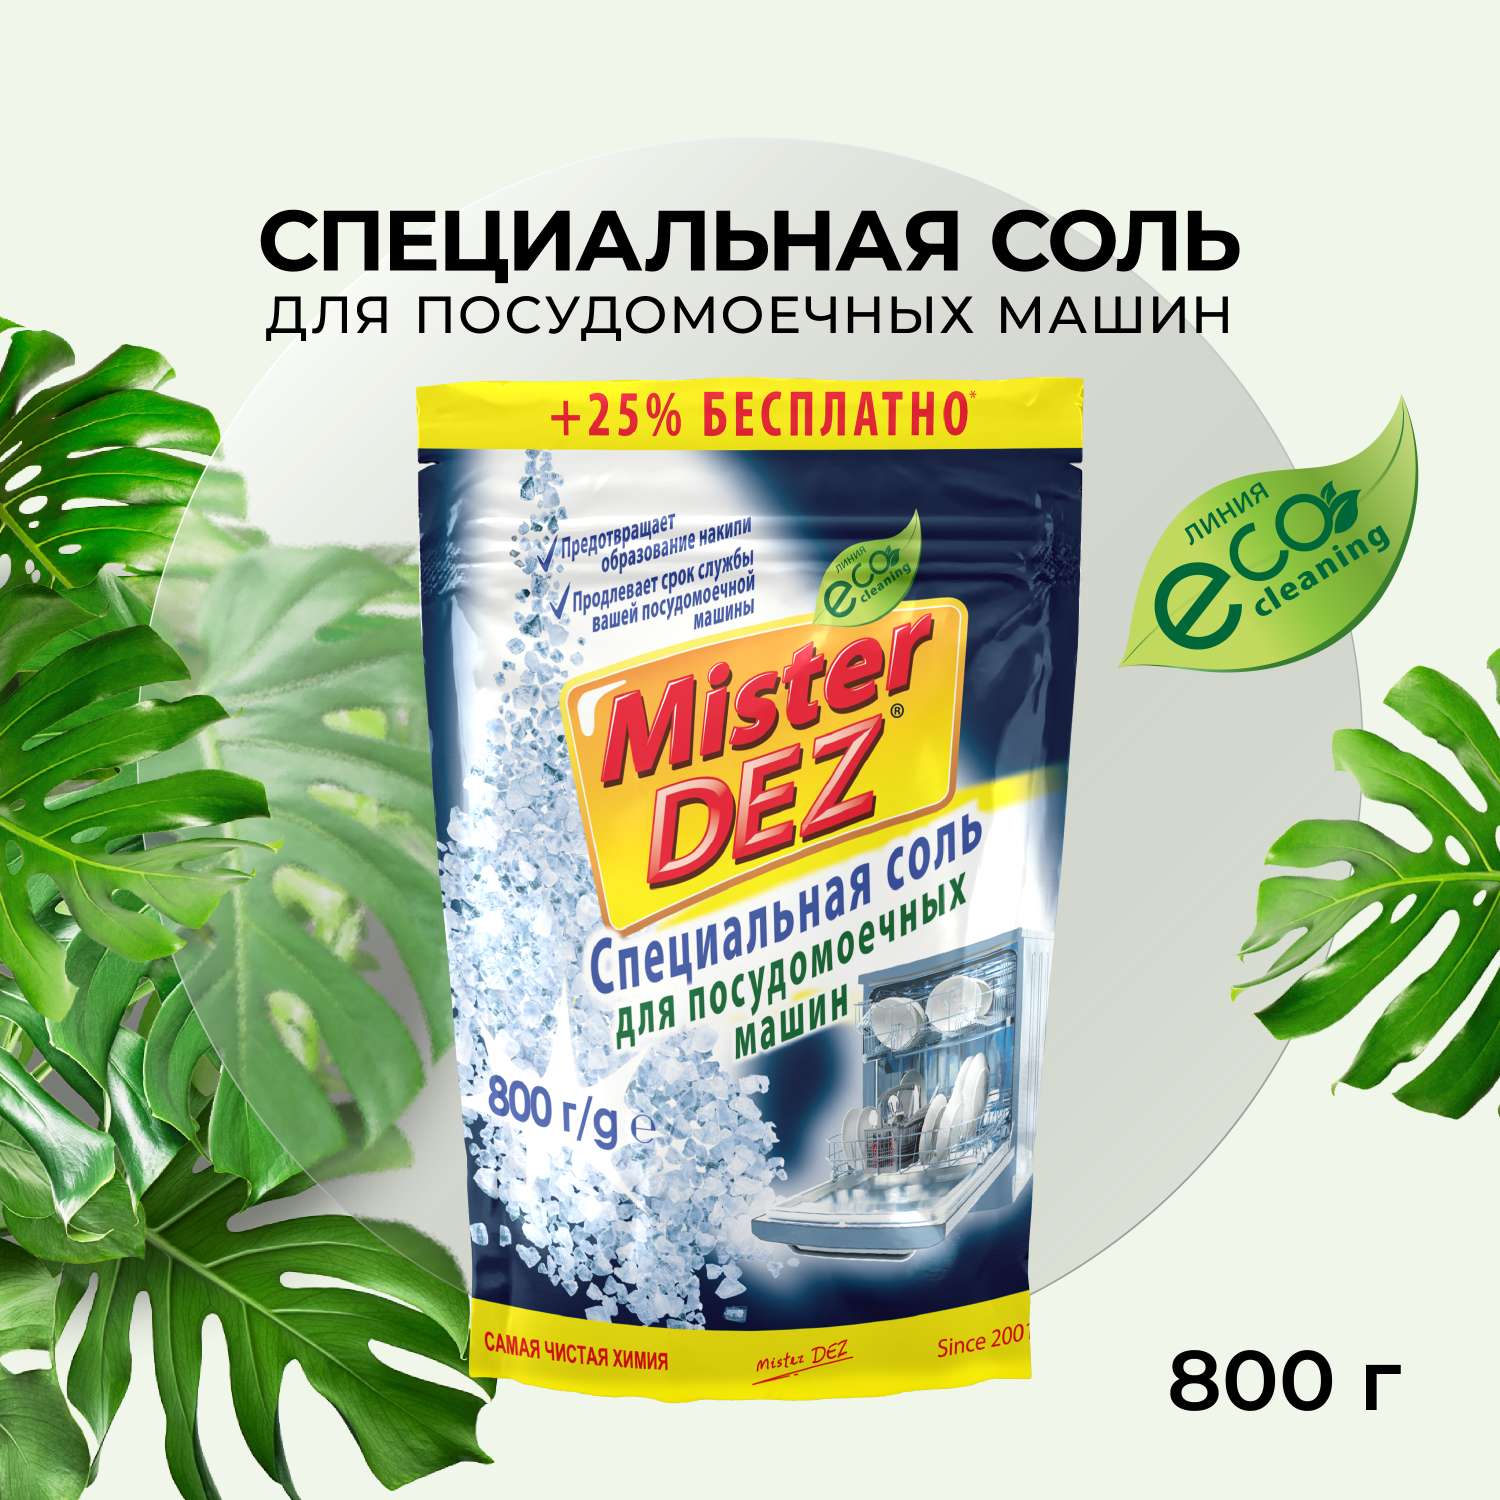 Соль для посудомоечных машин Mister Dez Eco-Cleaning Специальная 800 гр - фото 2